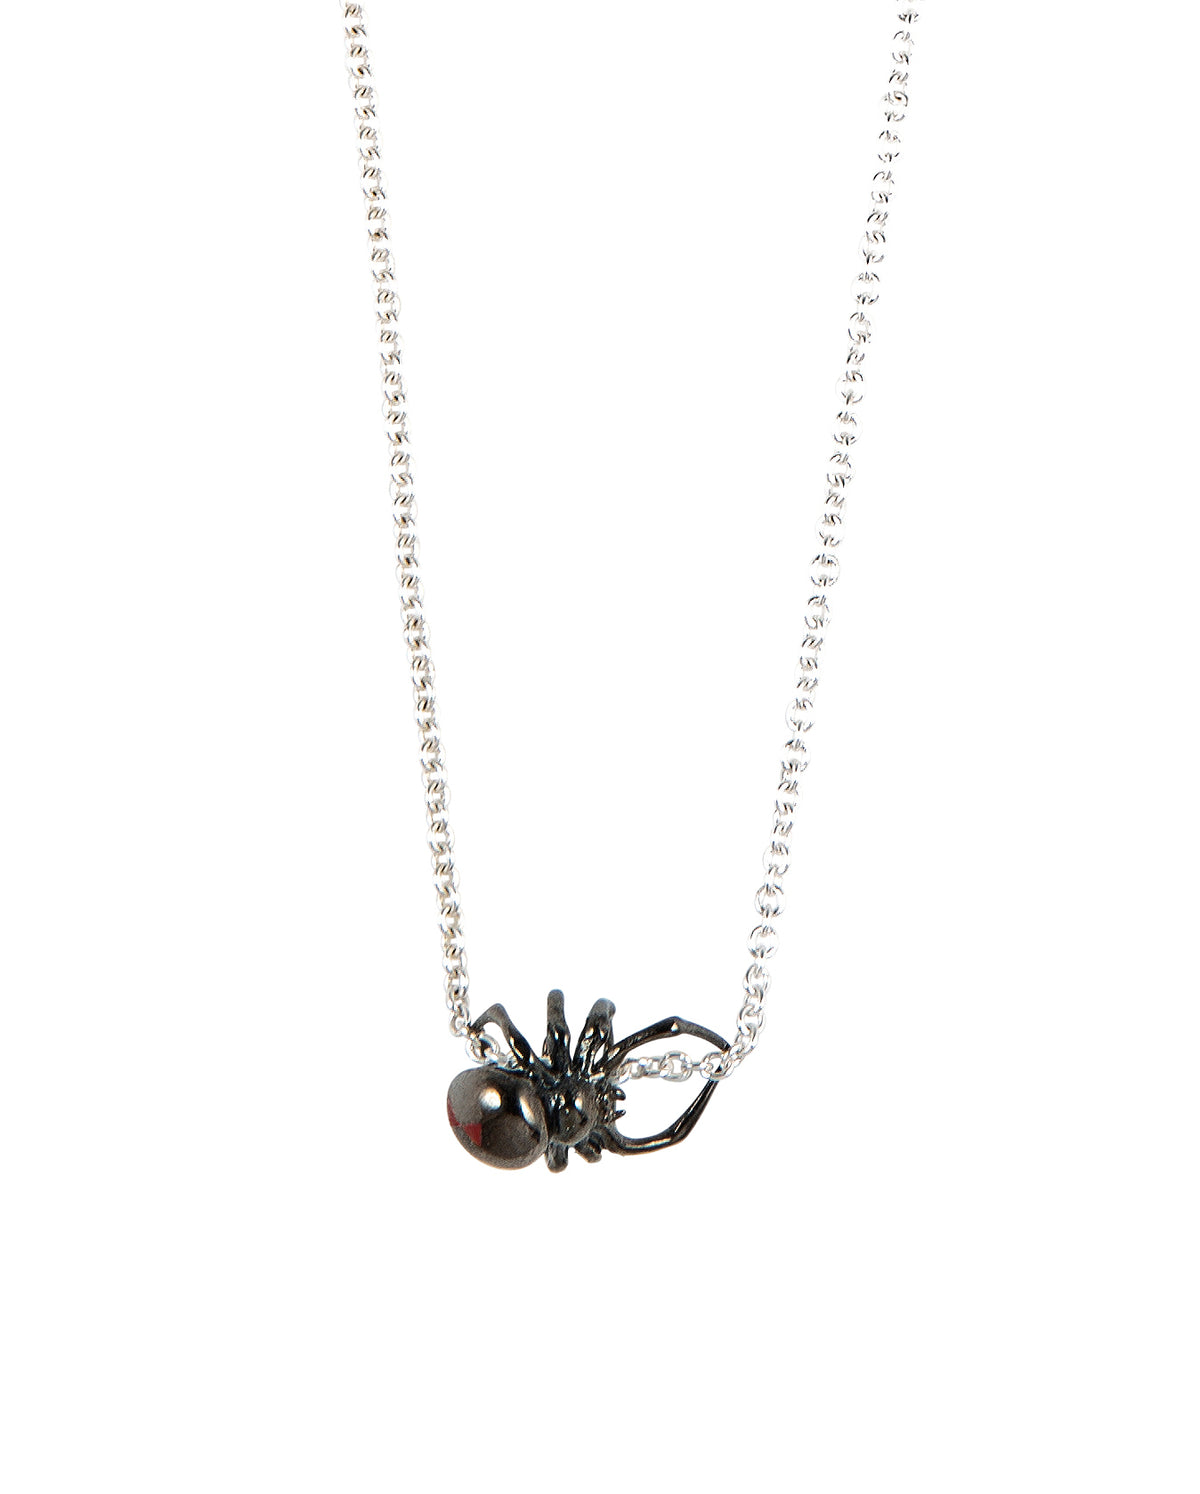 Black Widow' Necklace